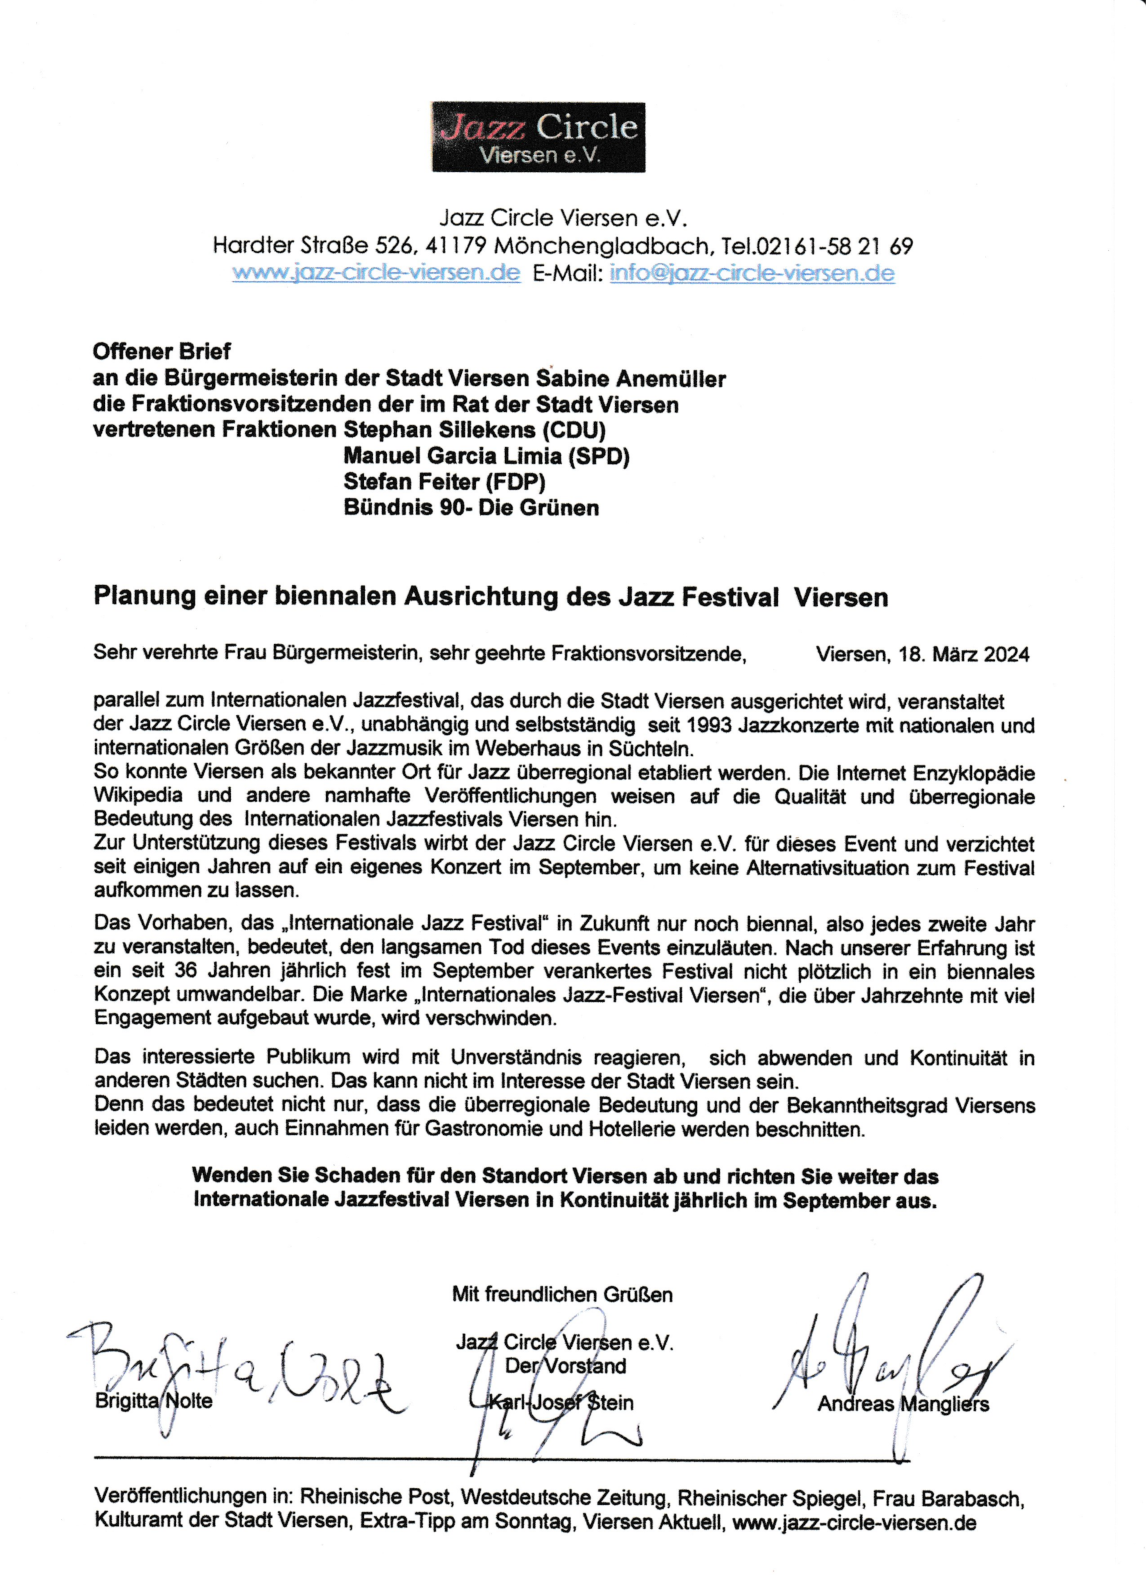 Offener Brief an die Bürgermeisterin der Stadt Viersen und die Fraktionsvorsitzenden der im Rat der Stadt Viersen vertretenen Fraktionen